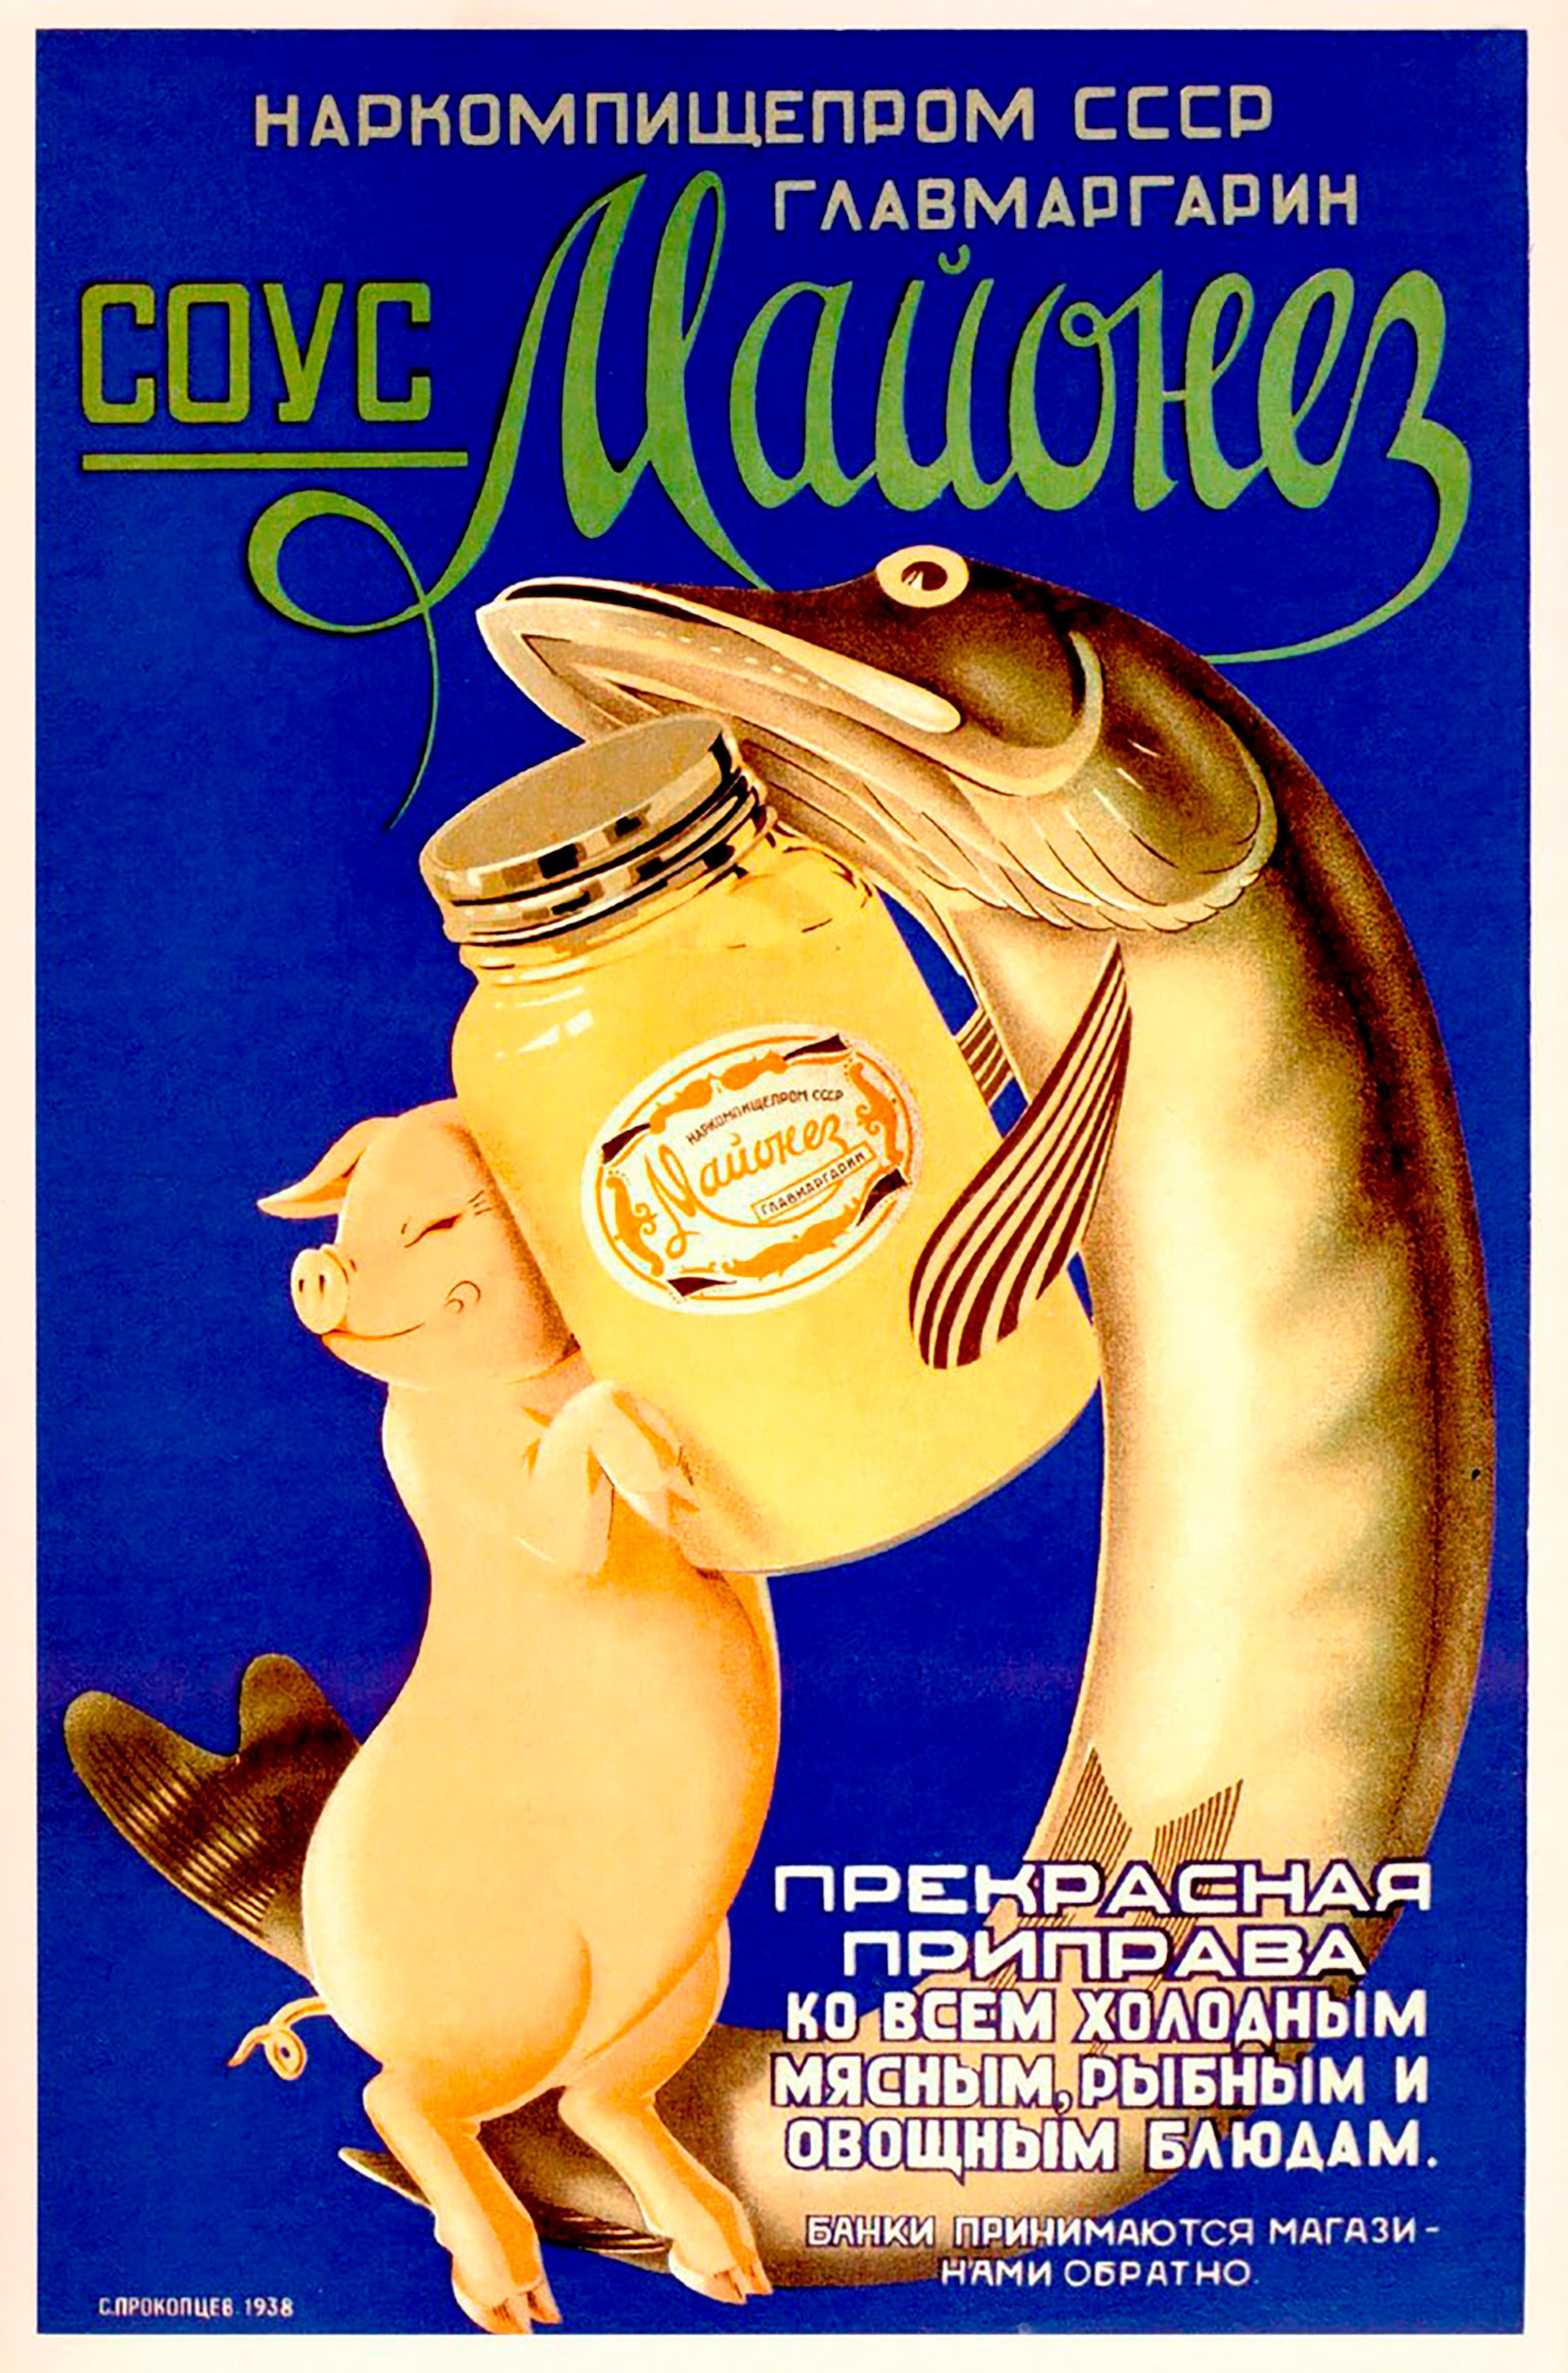 Pôster soviético de publicidade de maionese. 